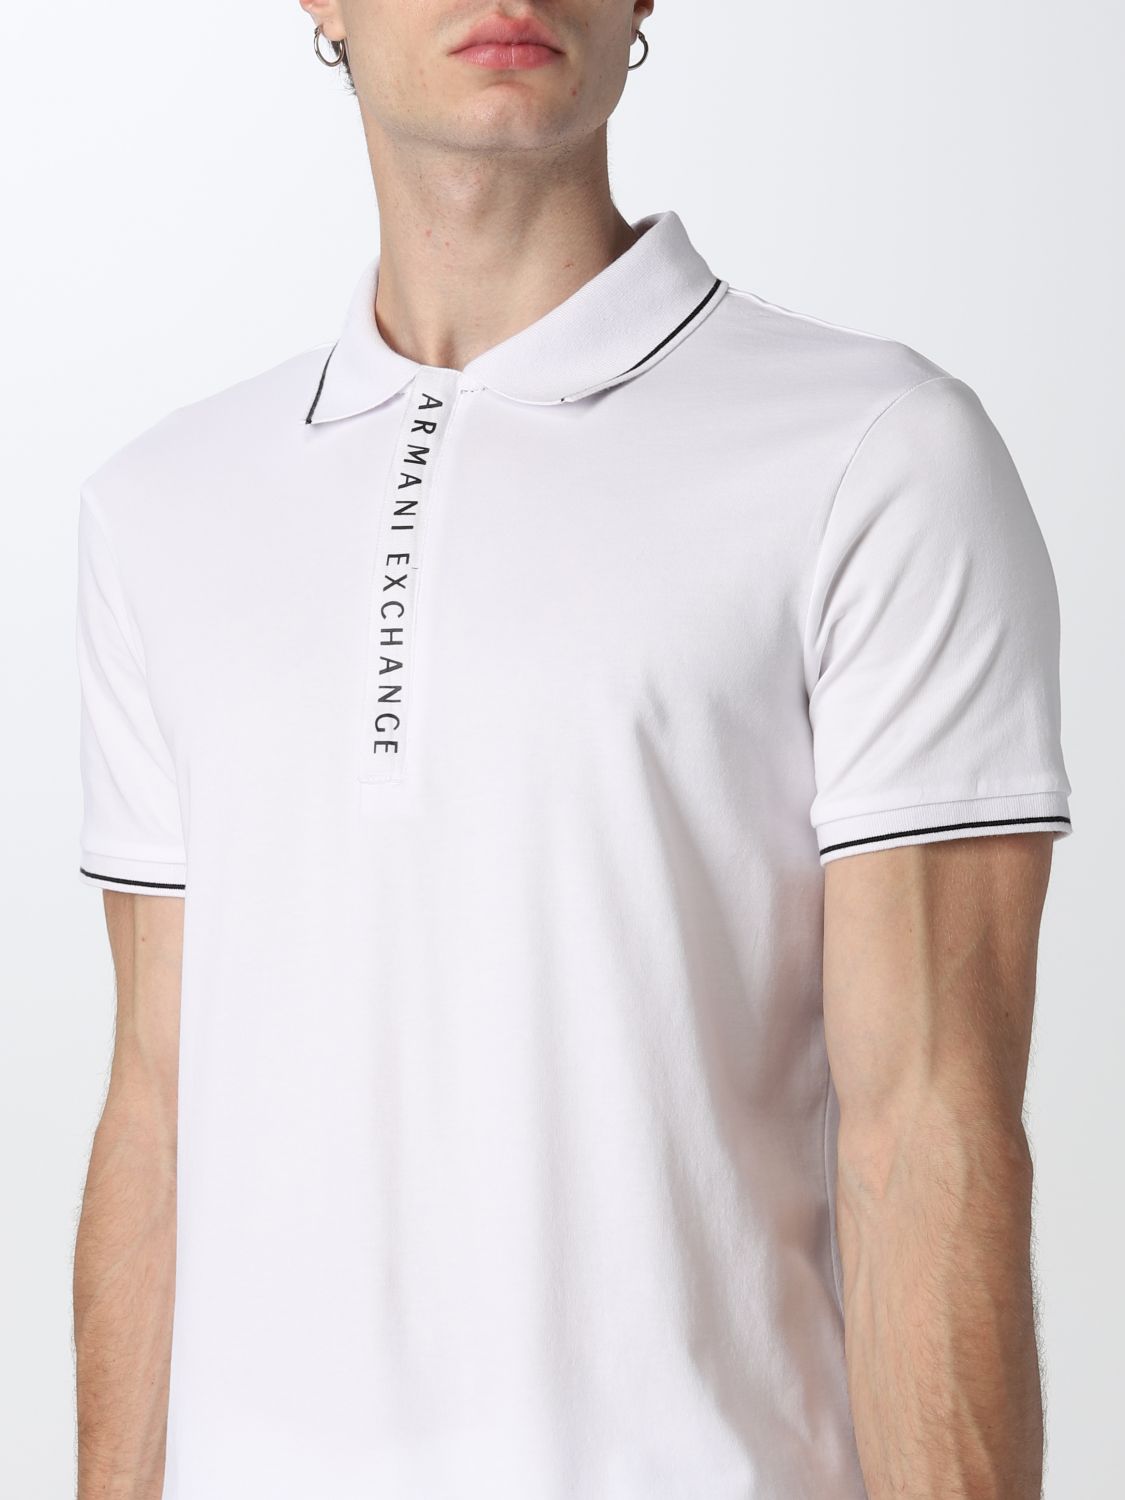 ARMANI EXCHANGE: polo shirt for men - White | Armani Exchange polo ...